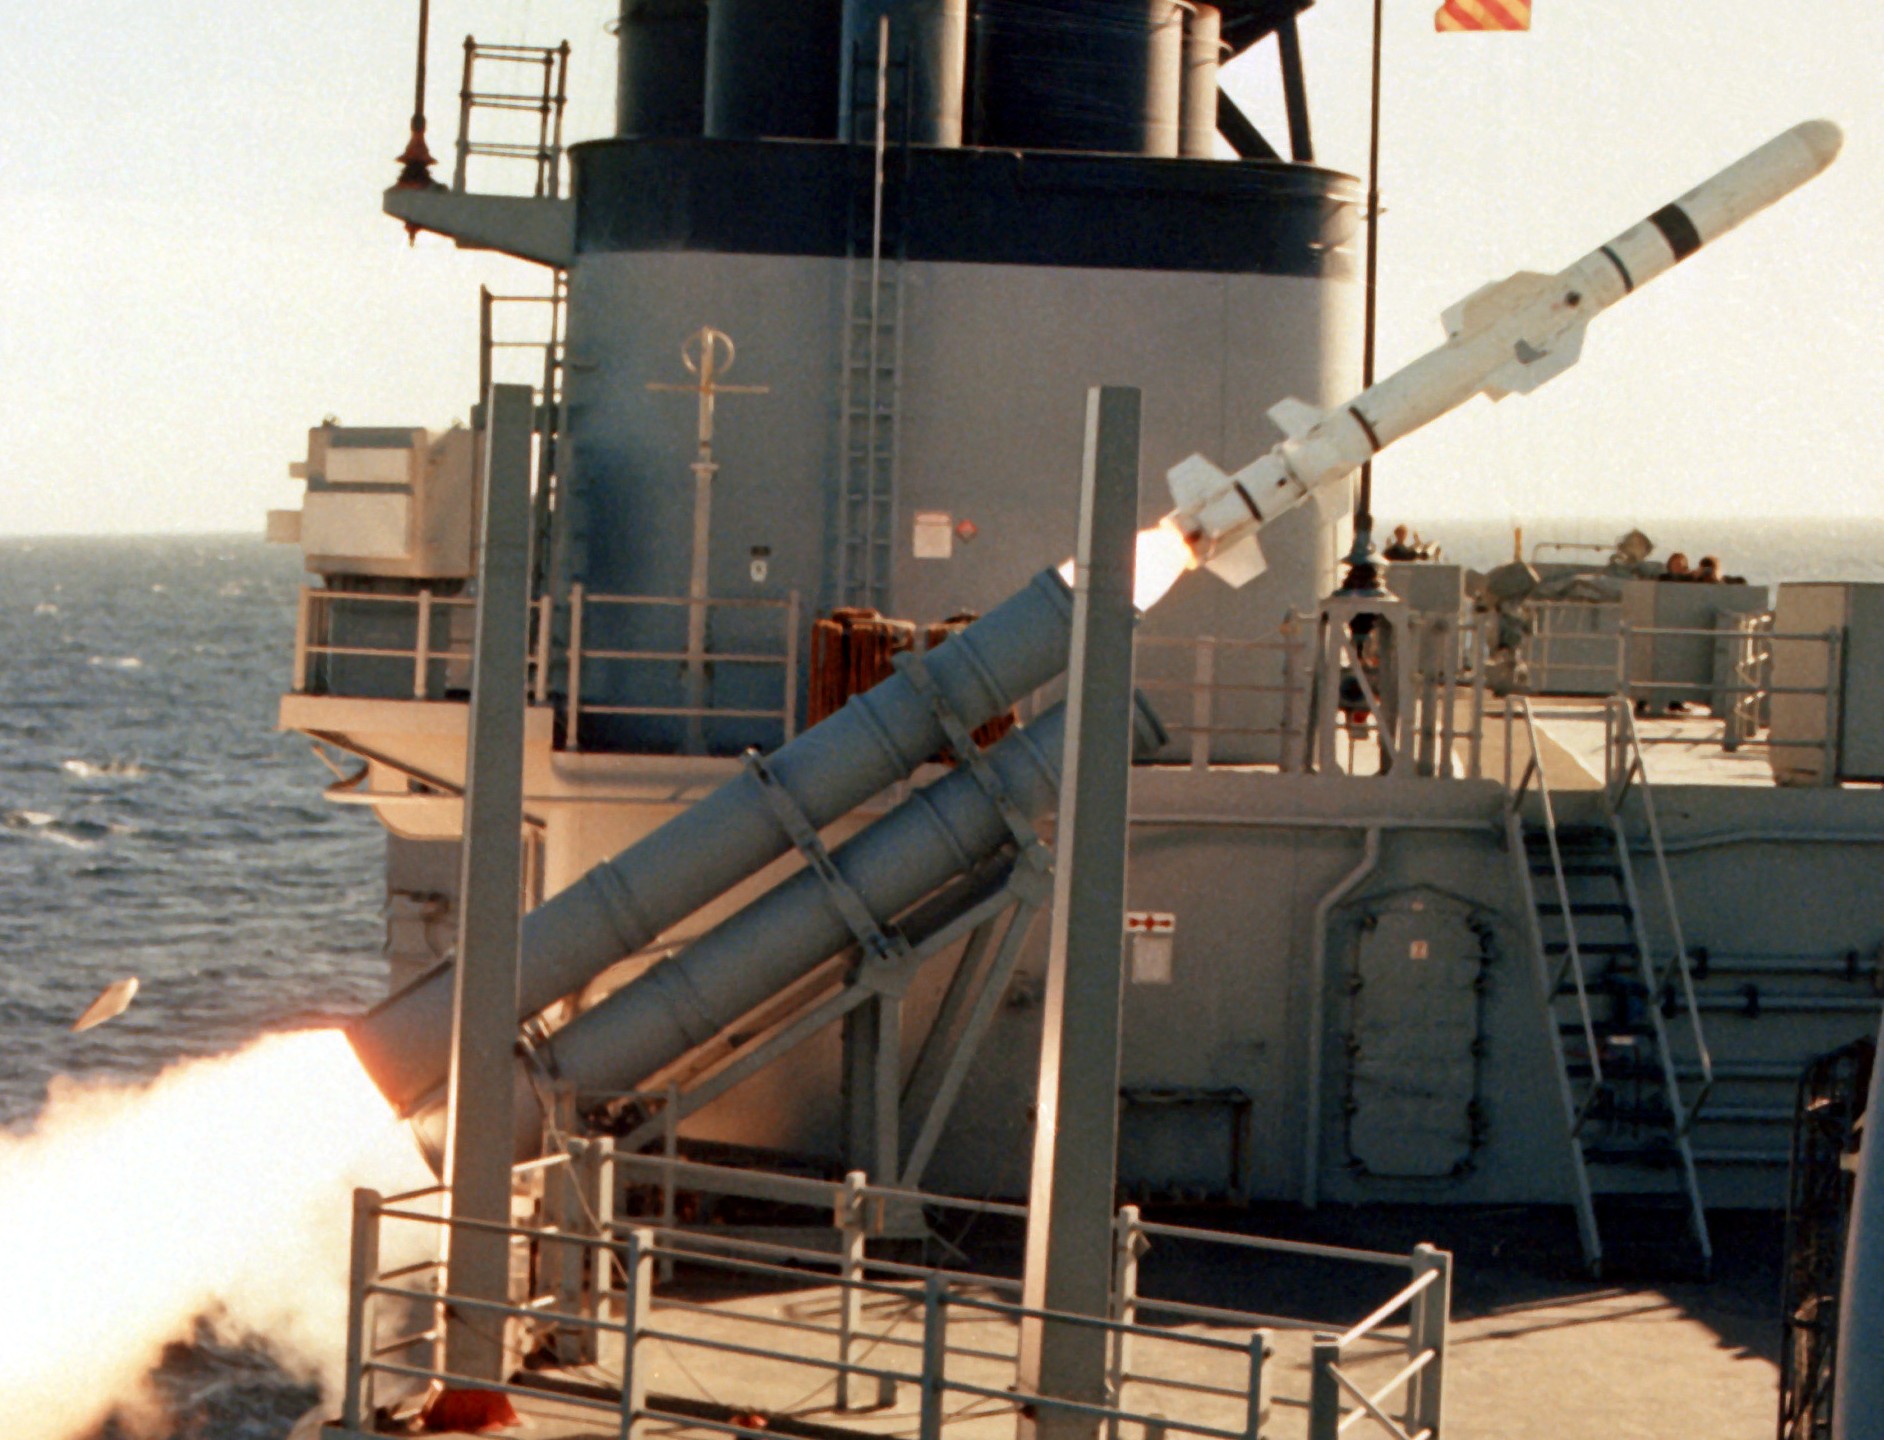 mk-141 missile launcher rgm-84 harpoon spruance class destroyer 21